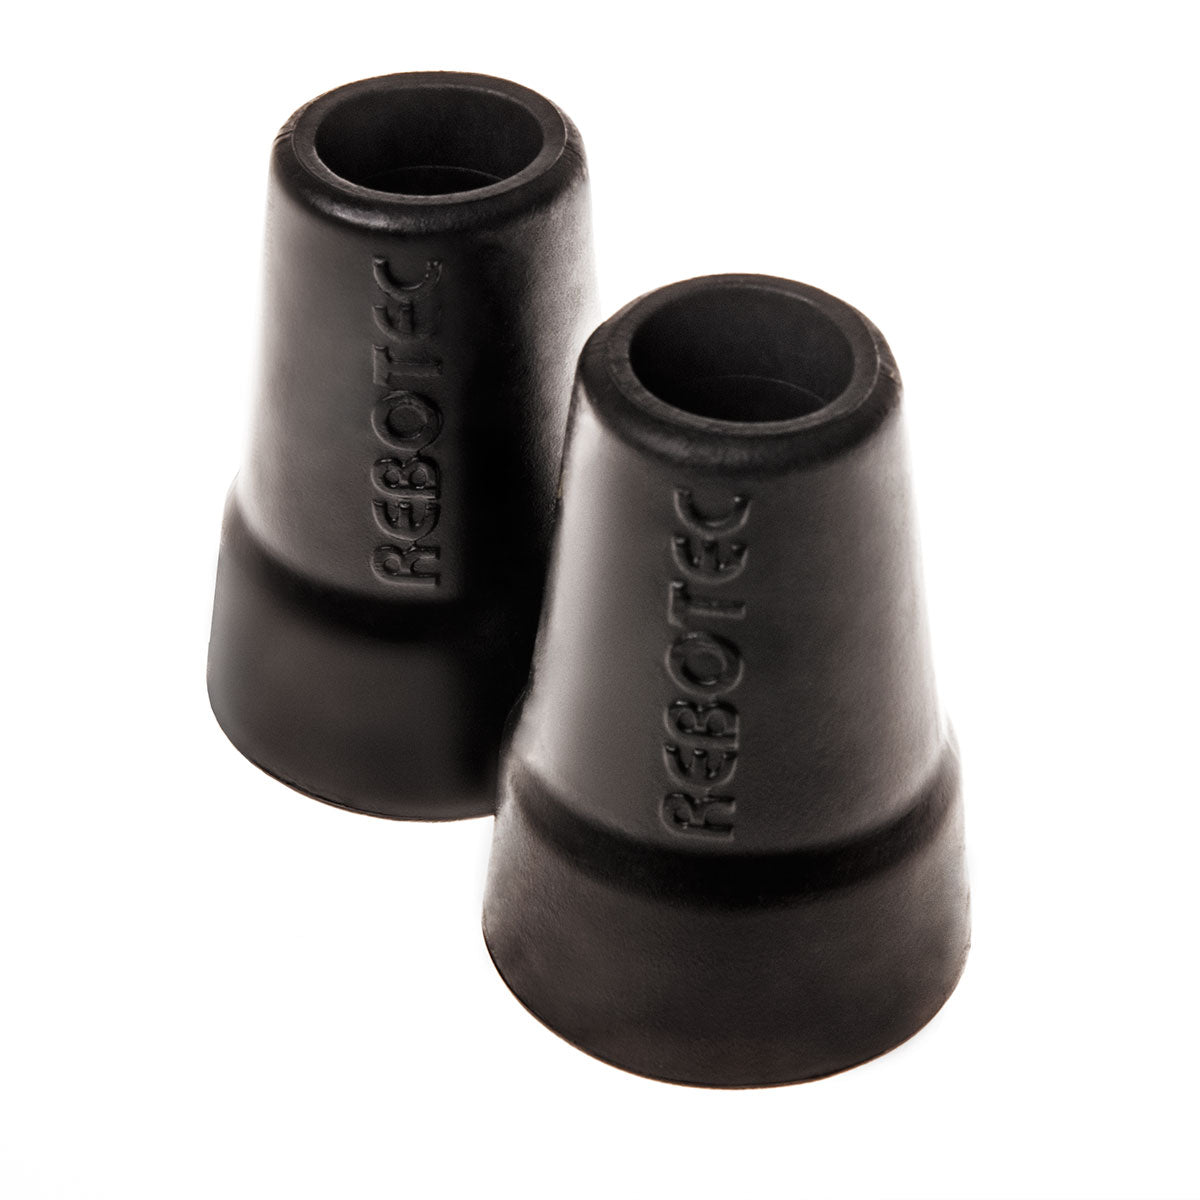 Rebotec 19mm, Ferrules Crutch Tips - Black